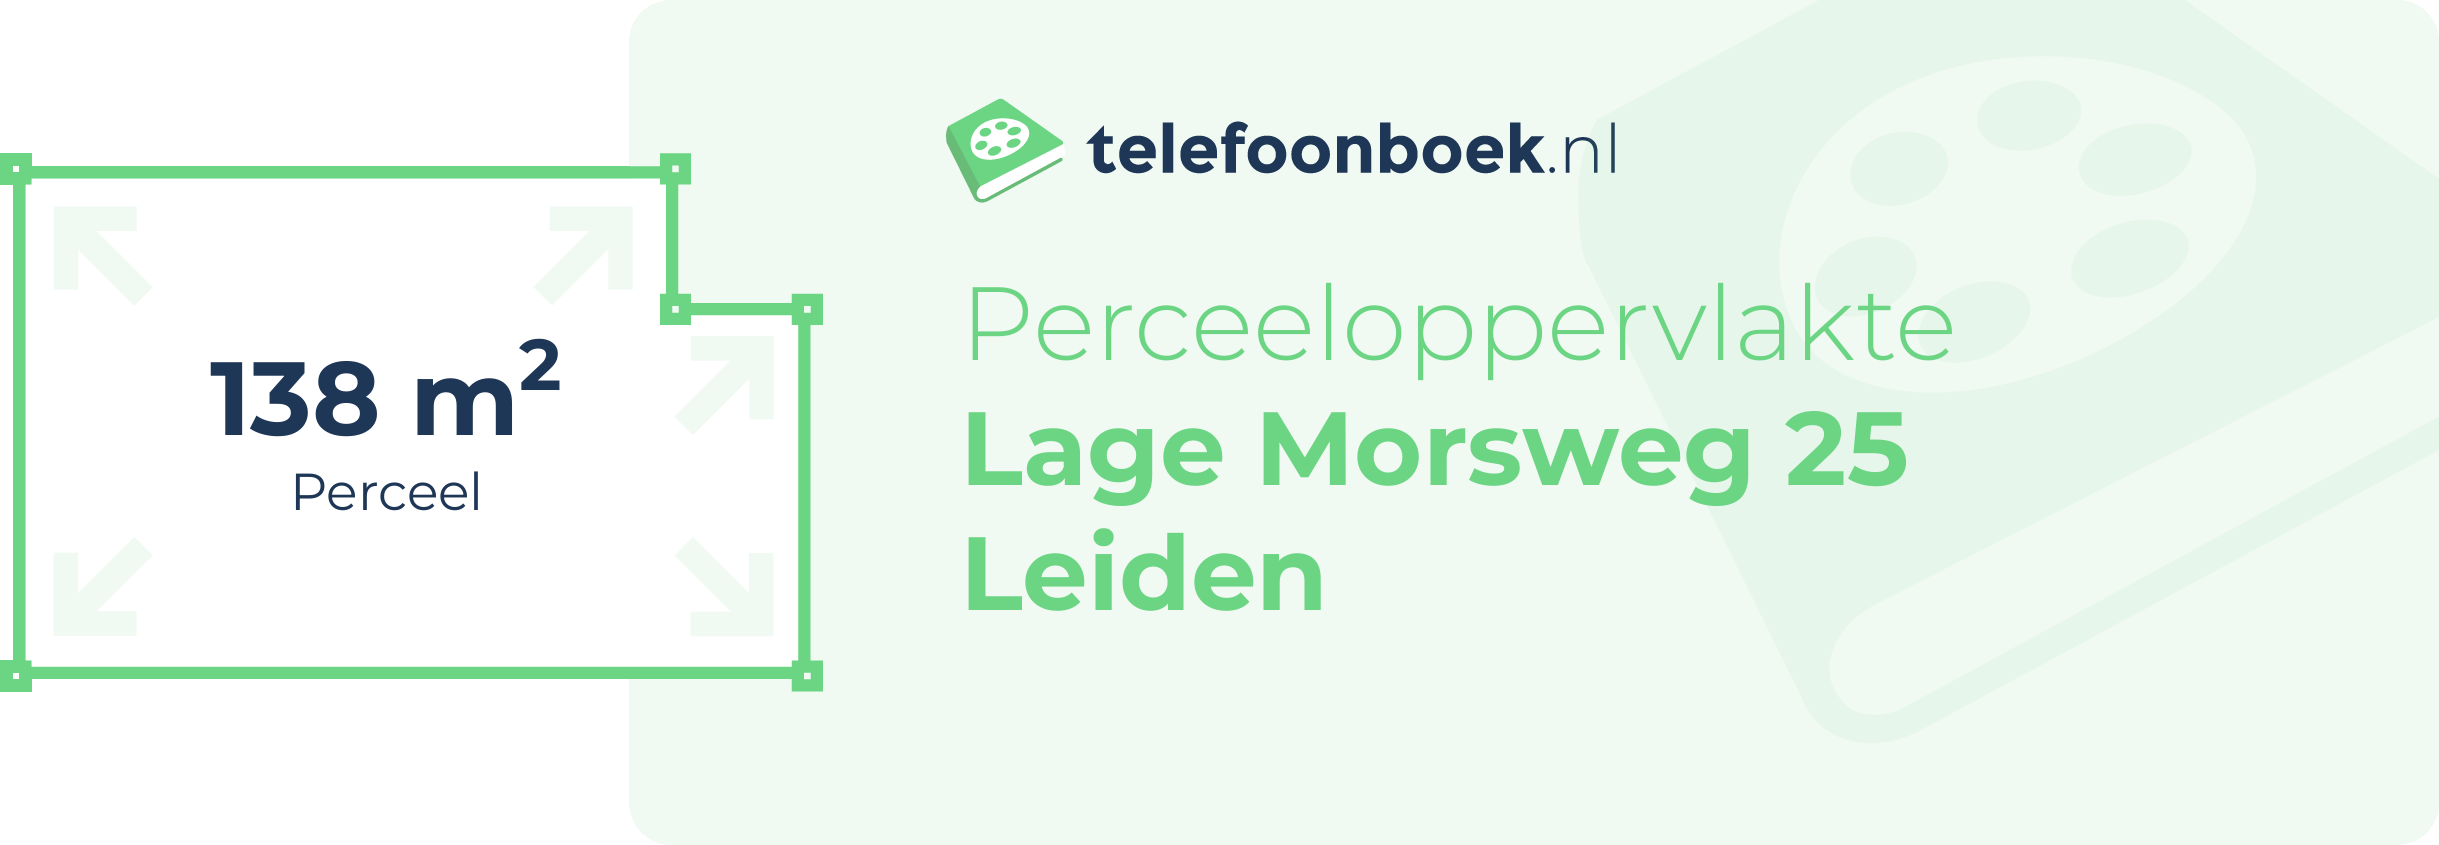 Perceeloppervlakte Lage Morsweg 25 Leiden